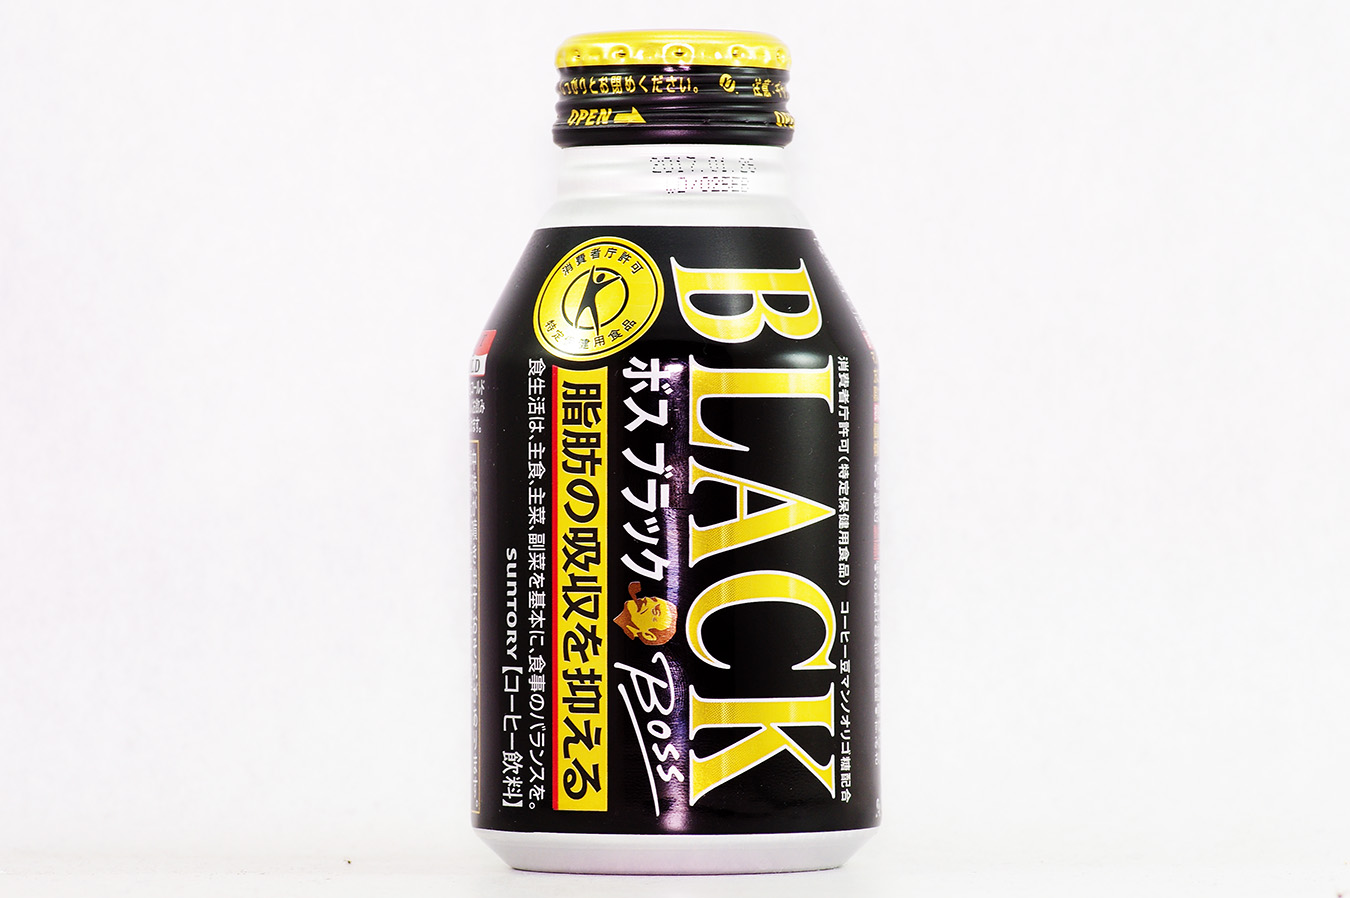 BOSS ブラック ボトル缶 2015年8月